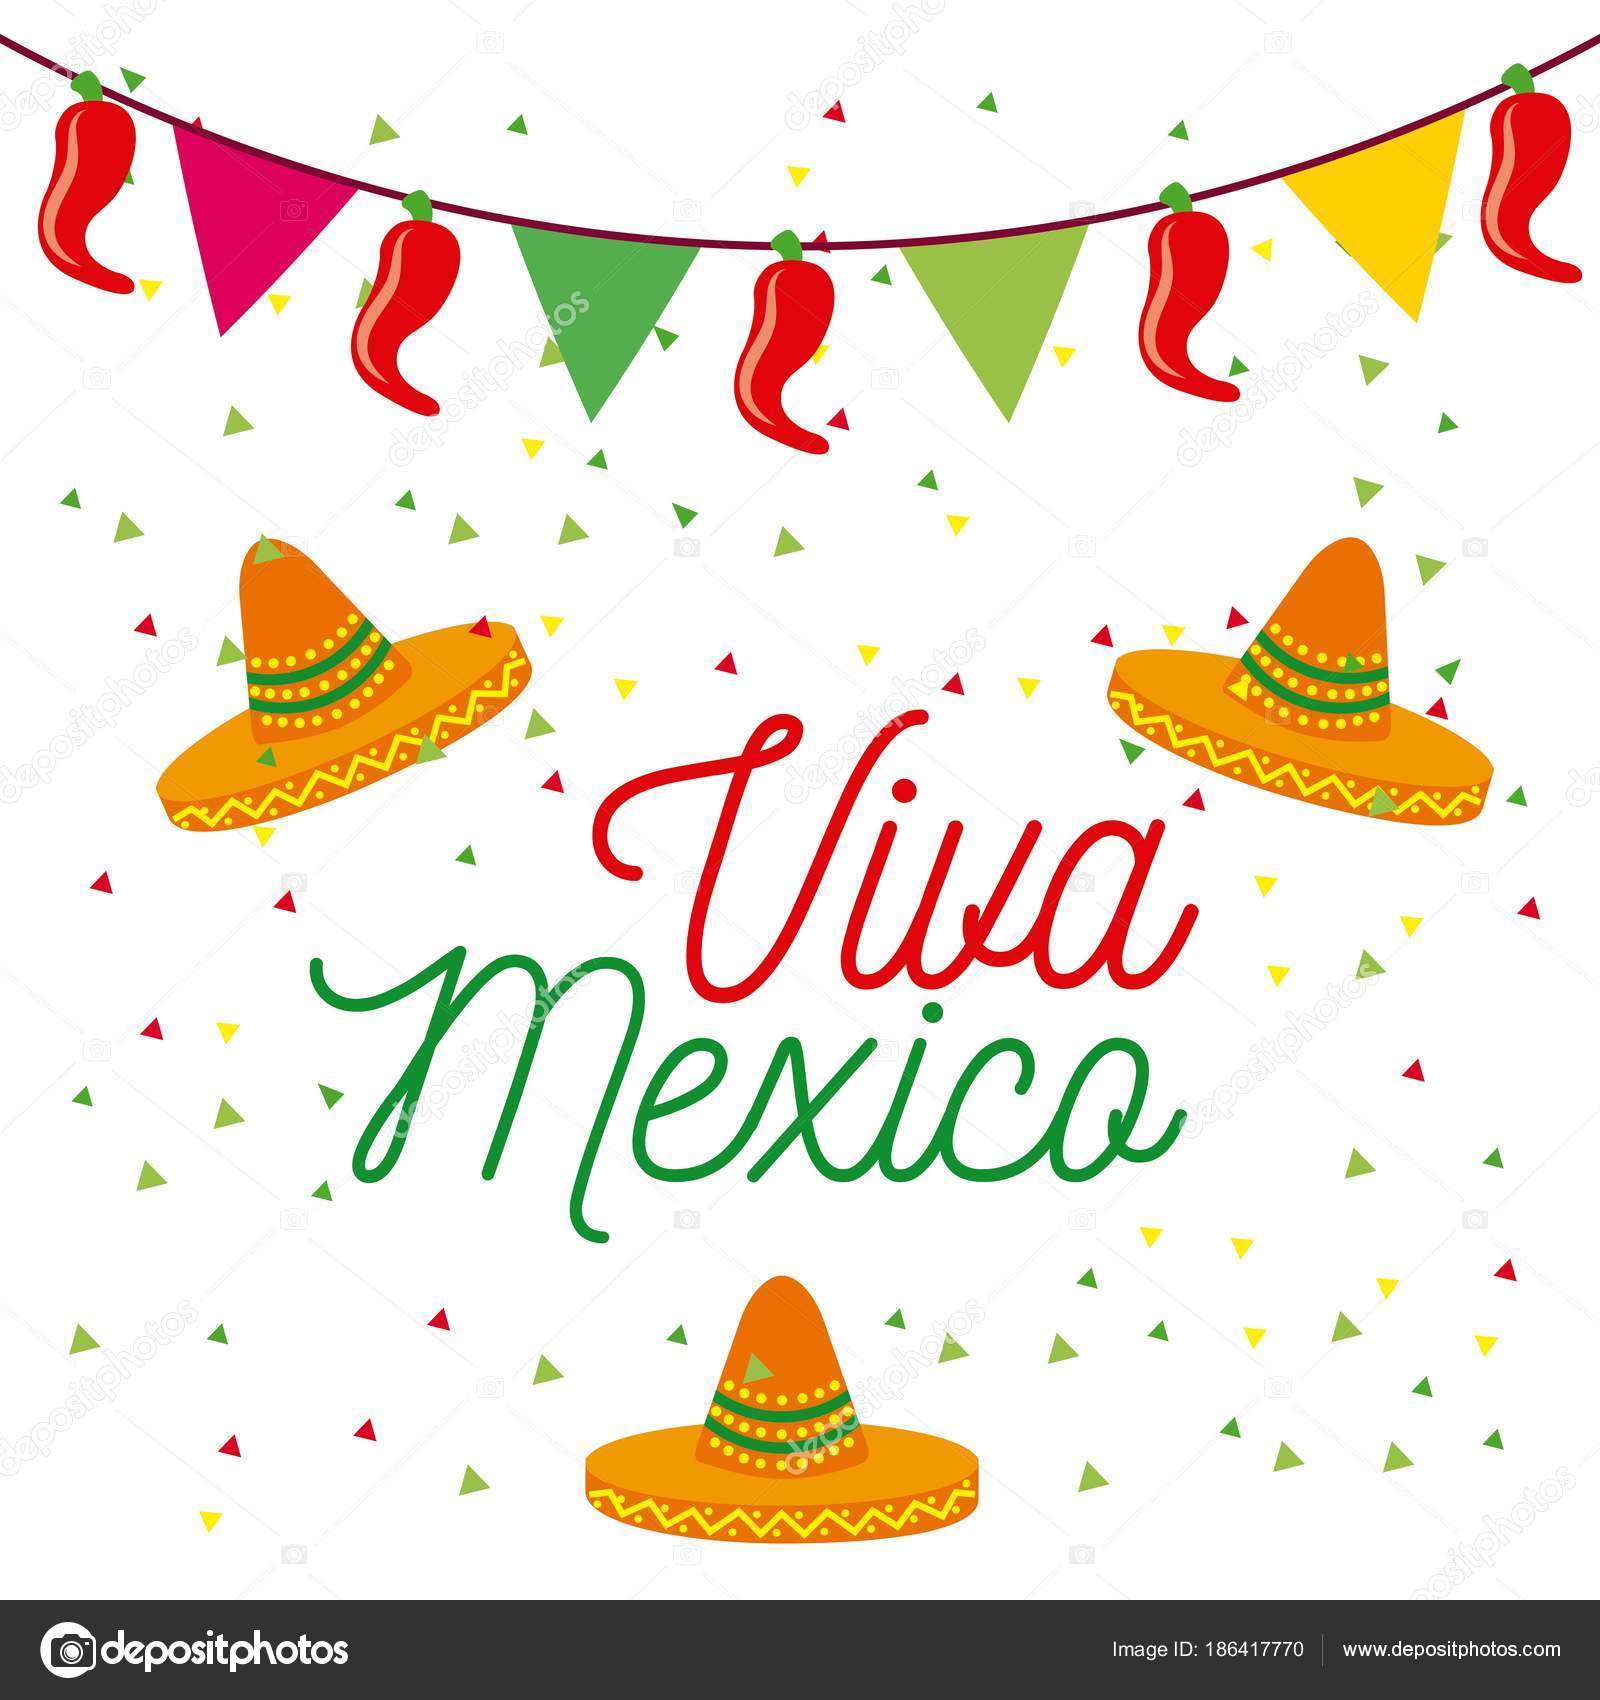 Letras Para Imprimir Viva Mexico